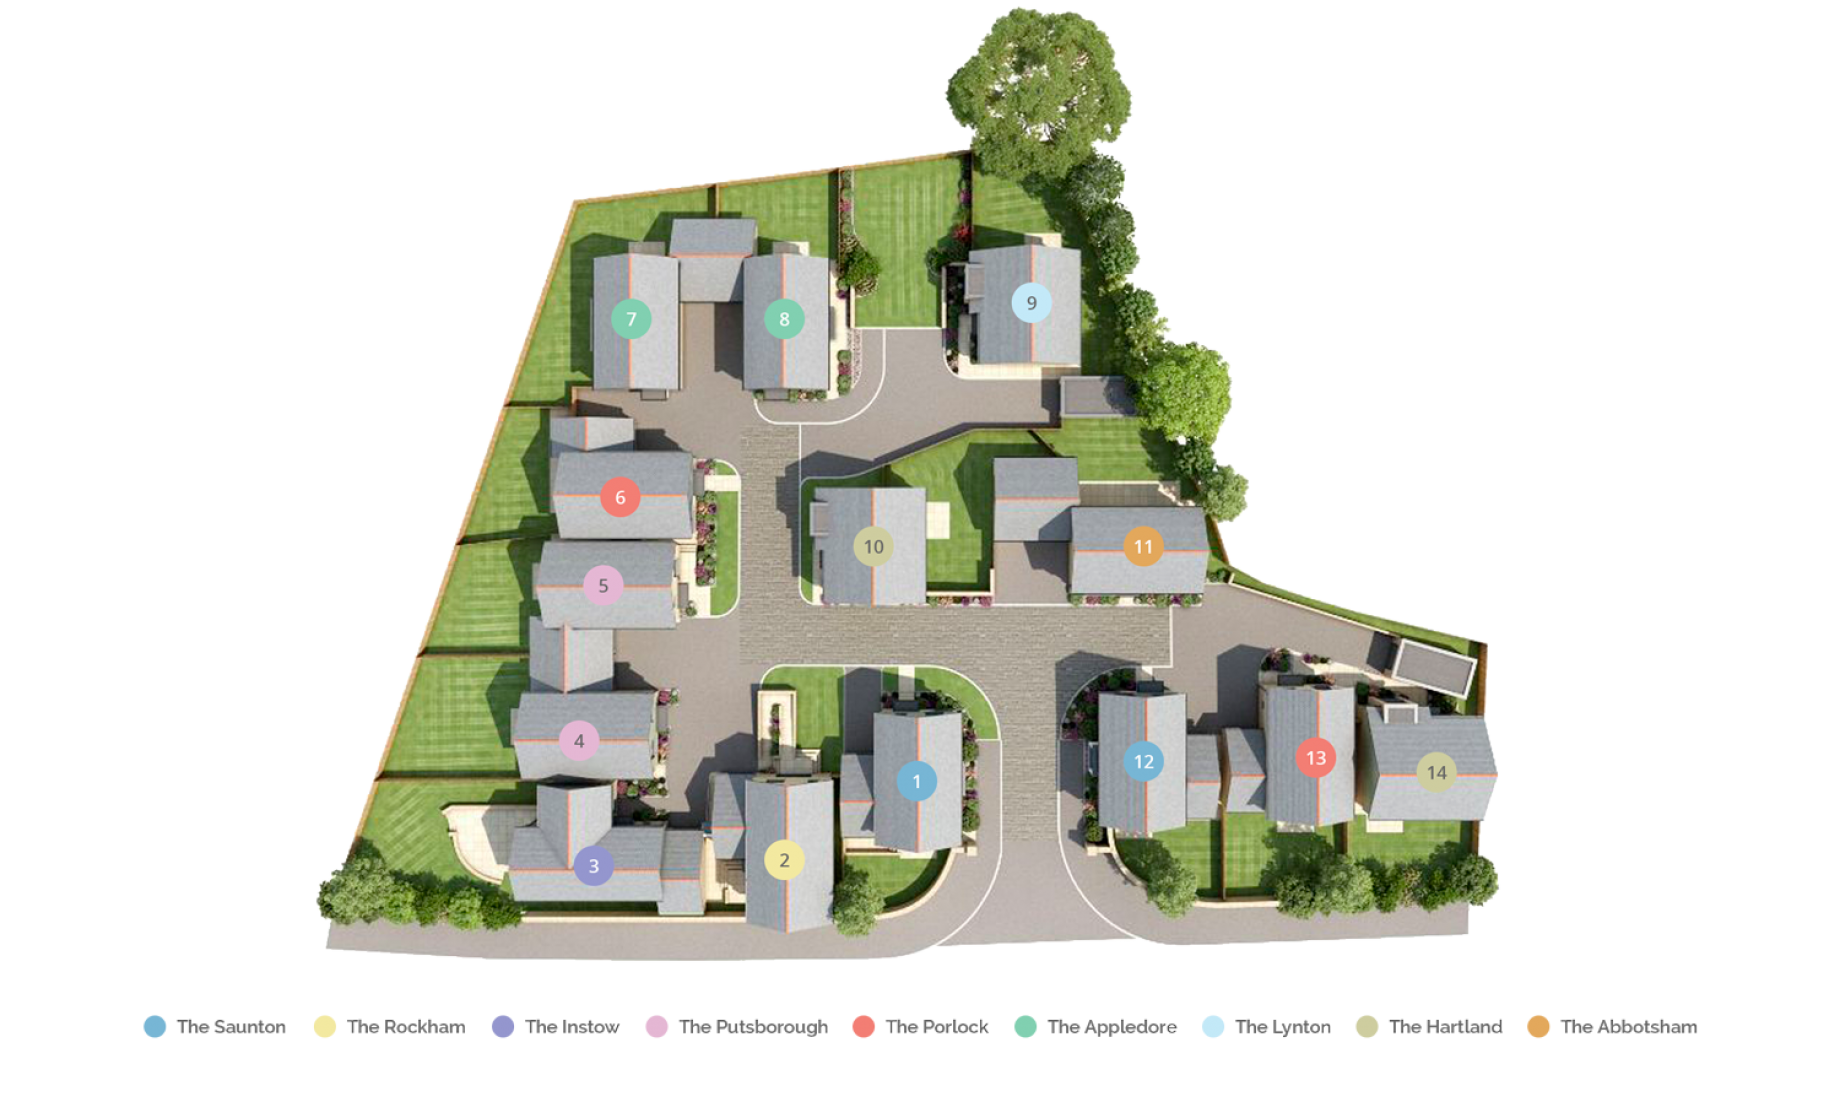 Site Plan for Adams Court, New Housing Development in Bideford